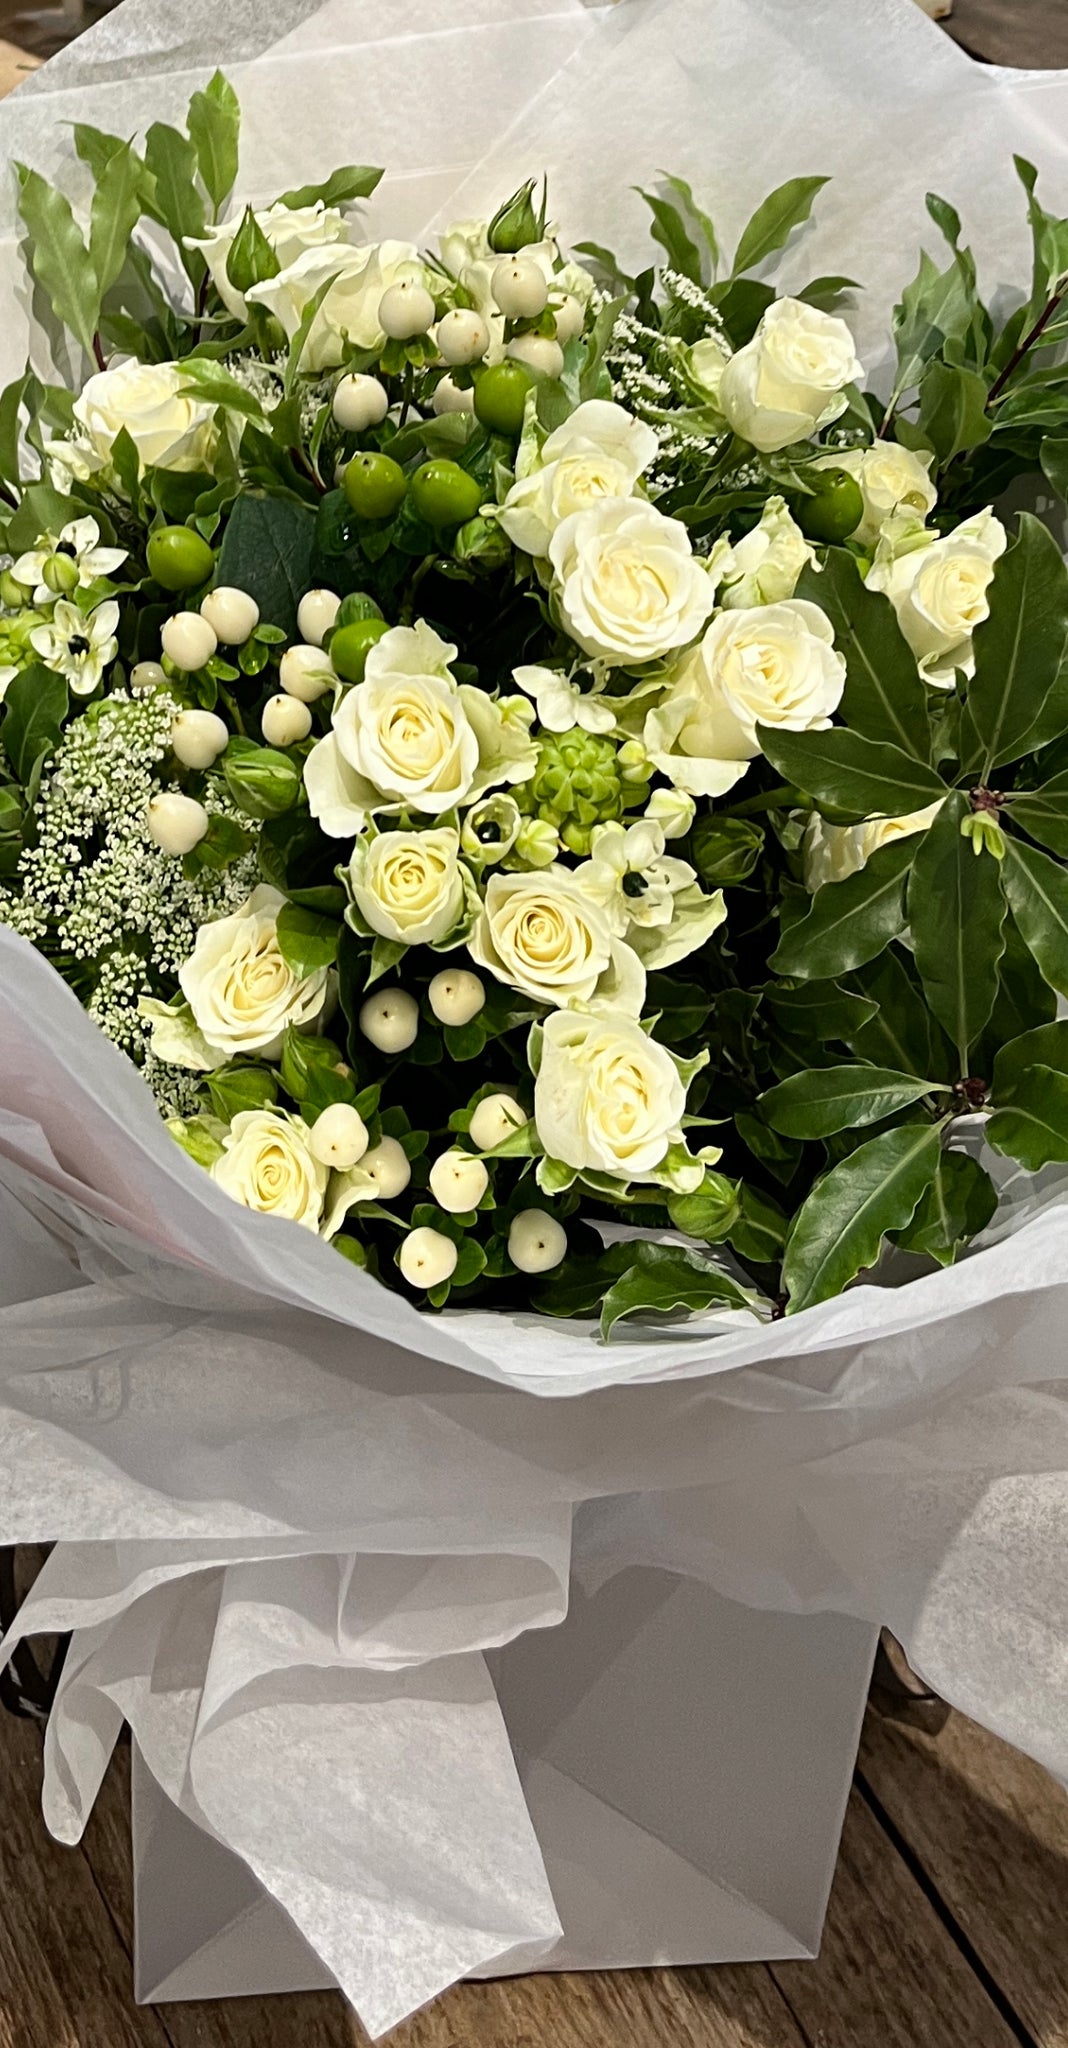 Large luxury whites bag of flowers